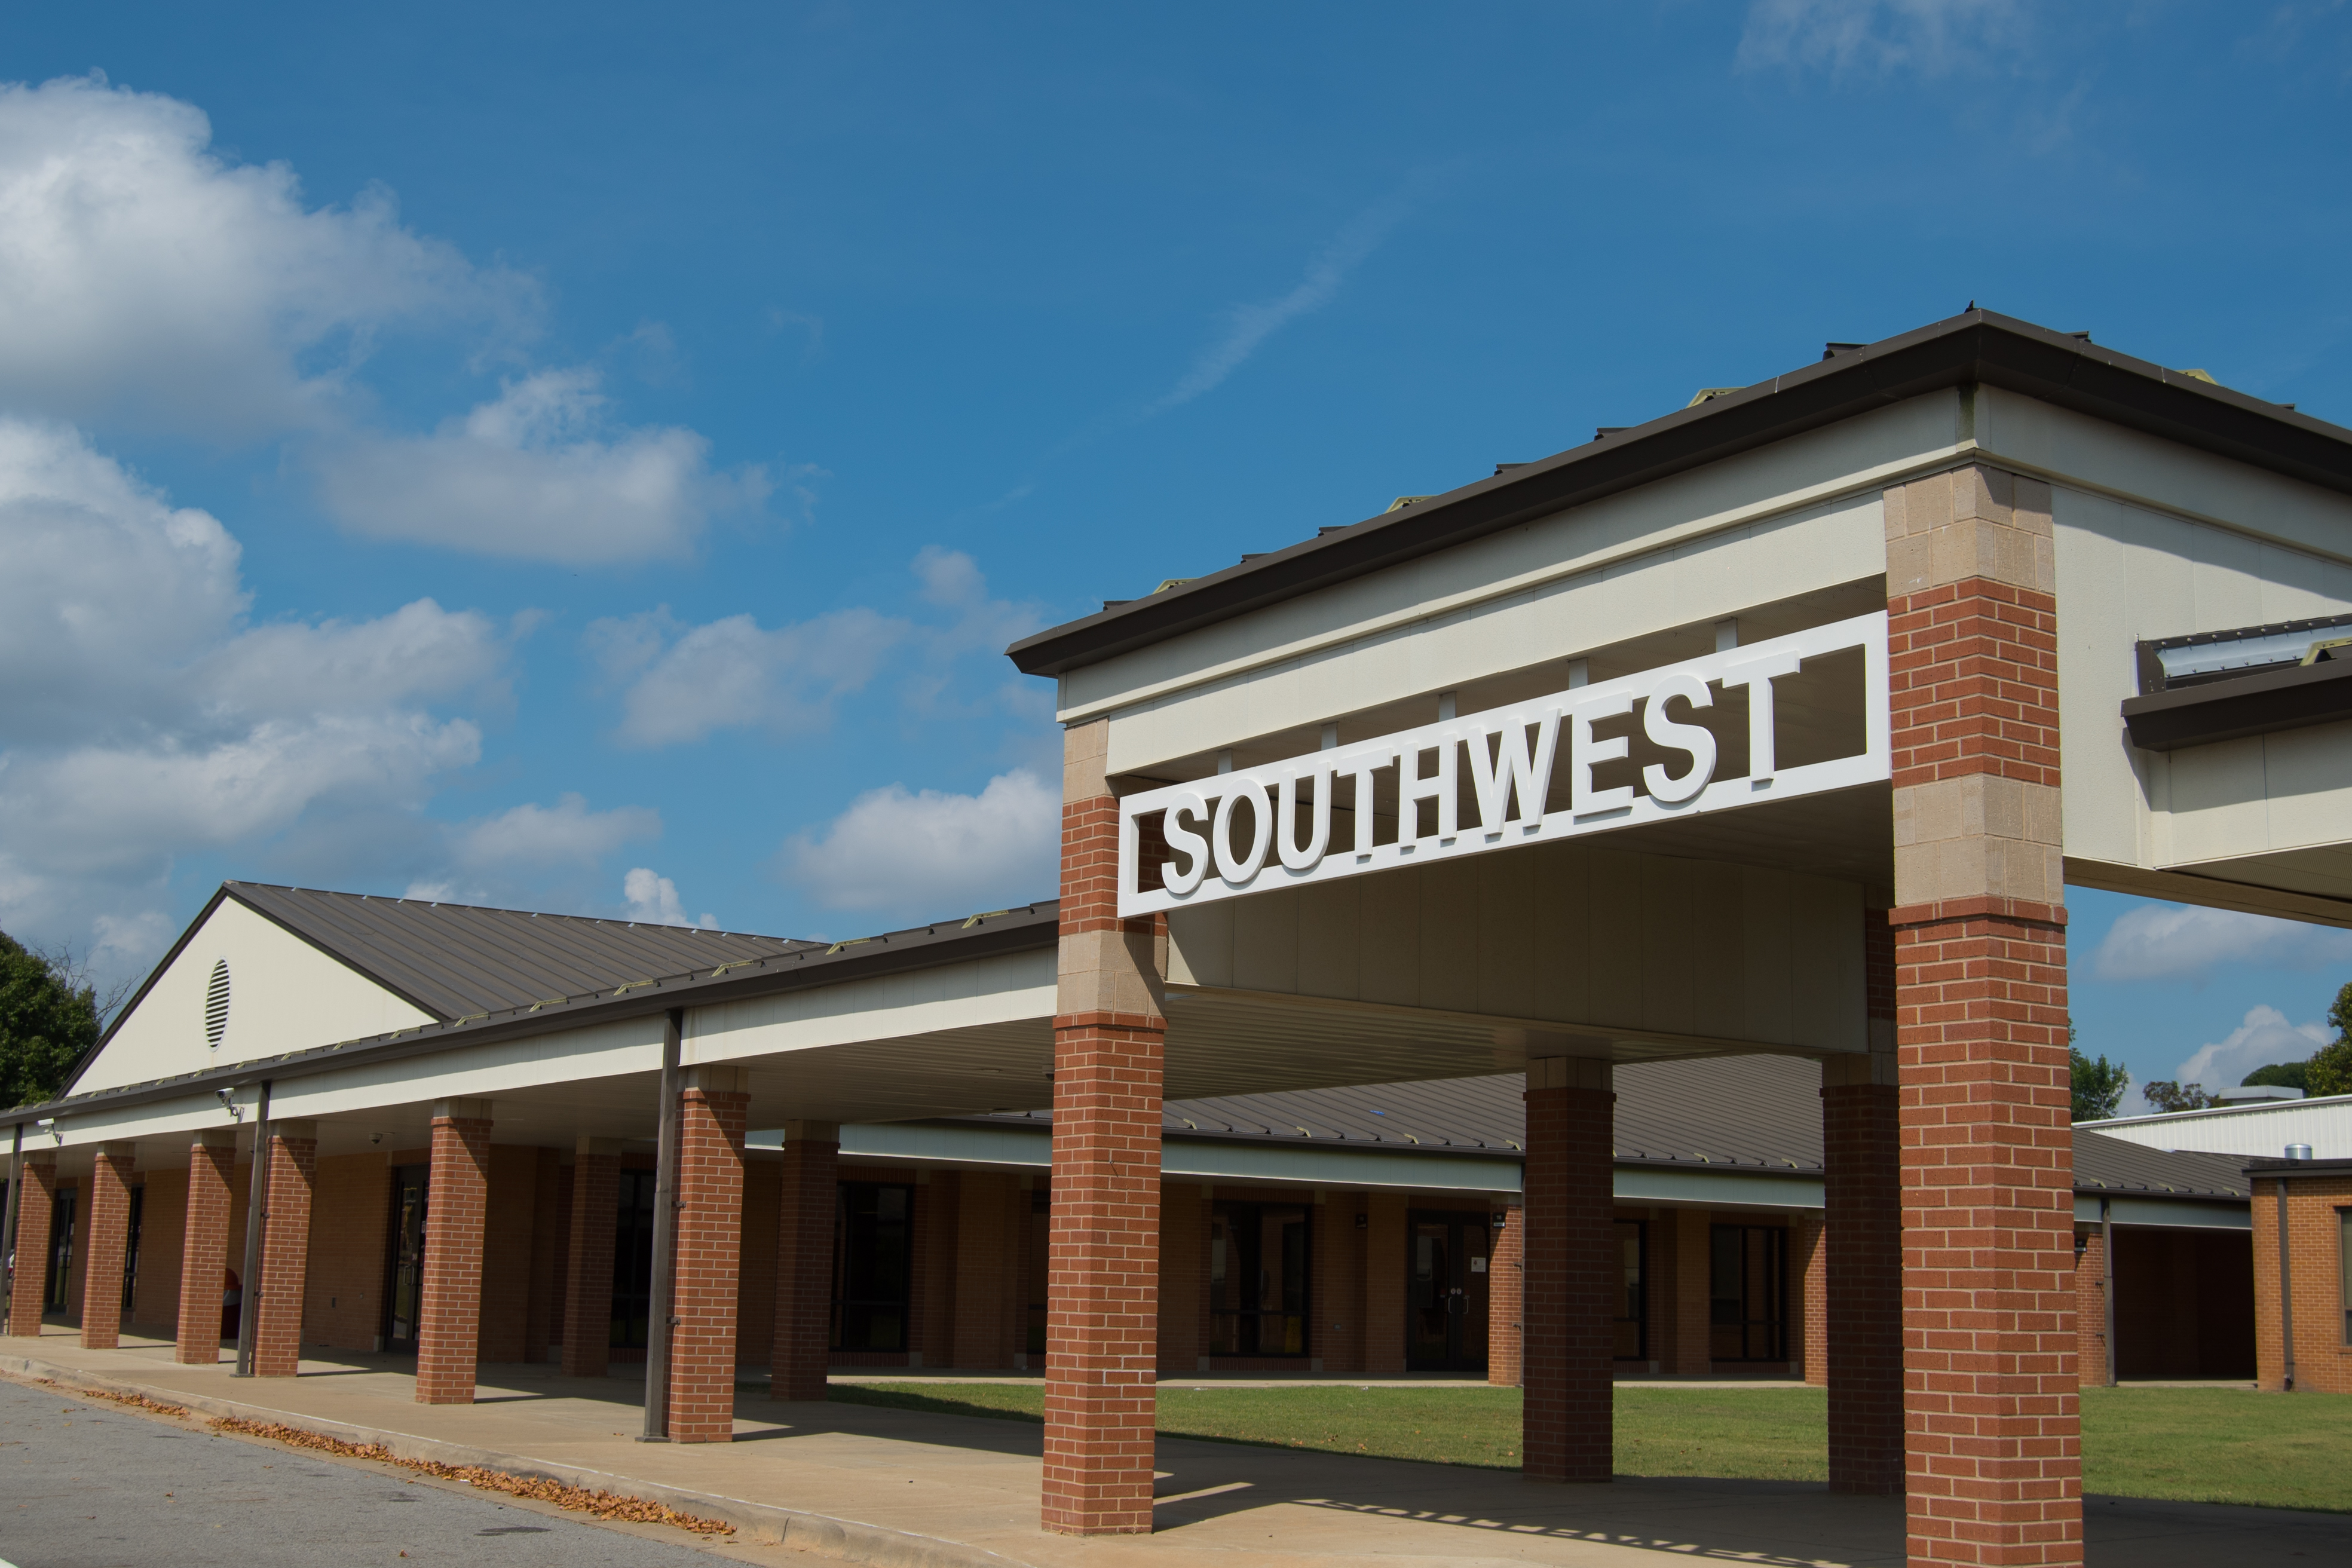 Southwest School